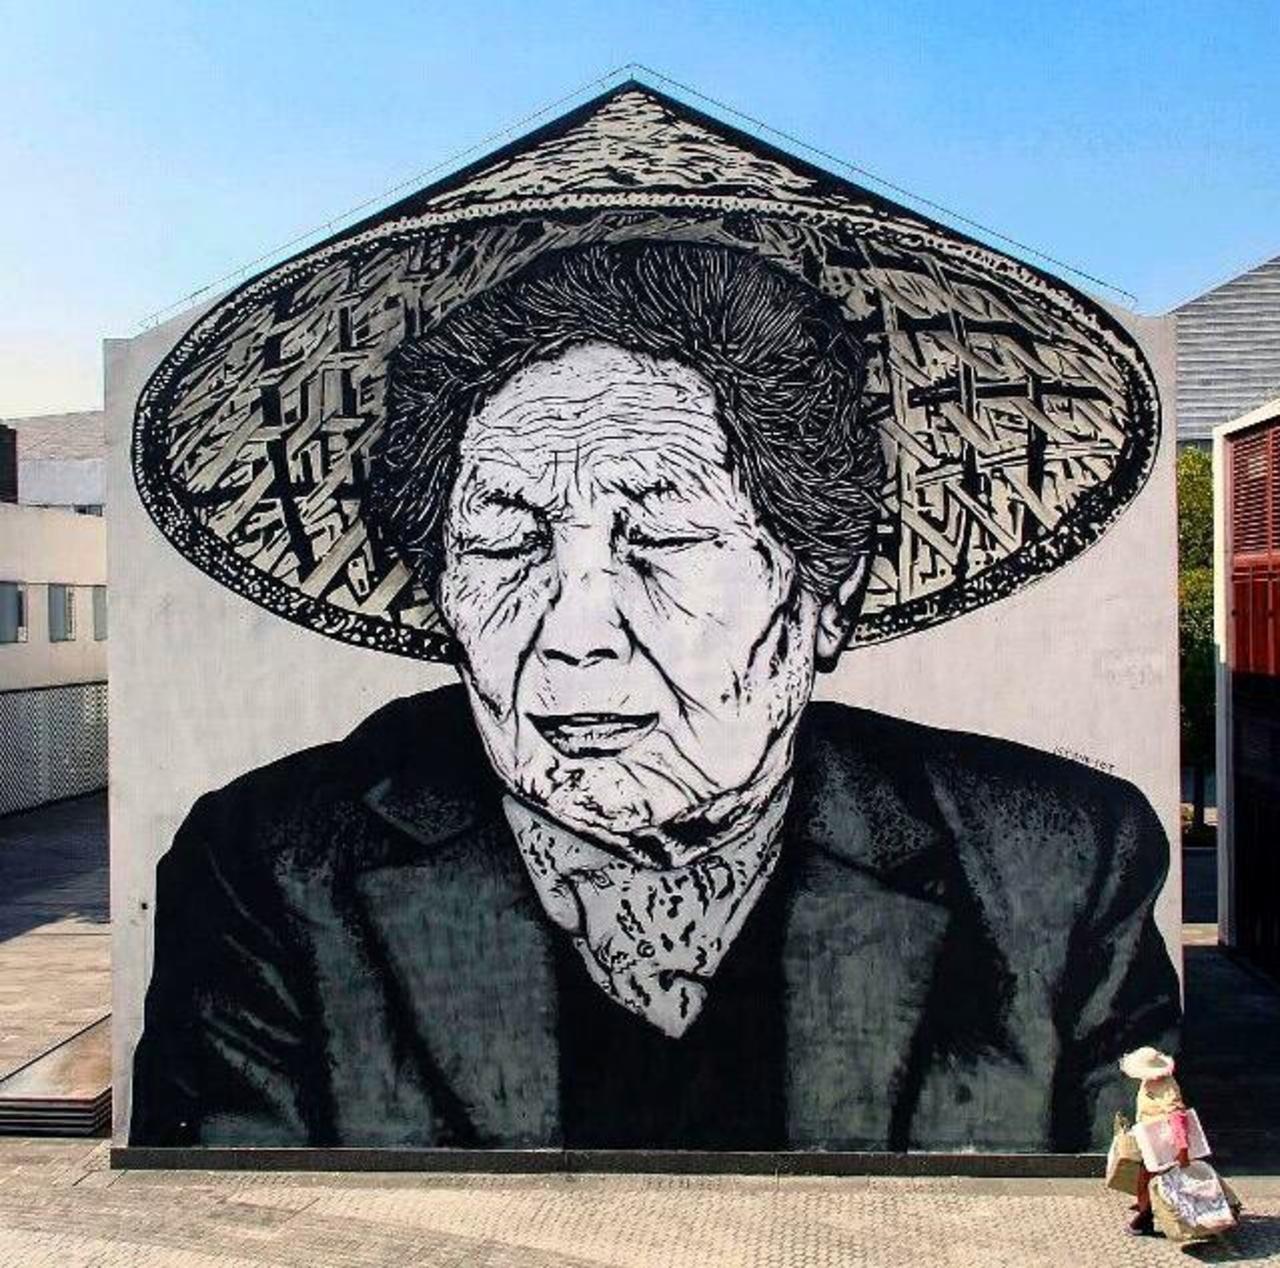 RT @artlife365: New Street Art by icy&sot in Shanghai  

#art #graffiti #mural #streetart http://t.co/aV4dzDDyI2